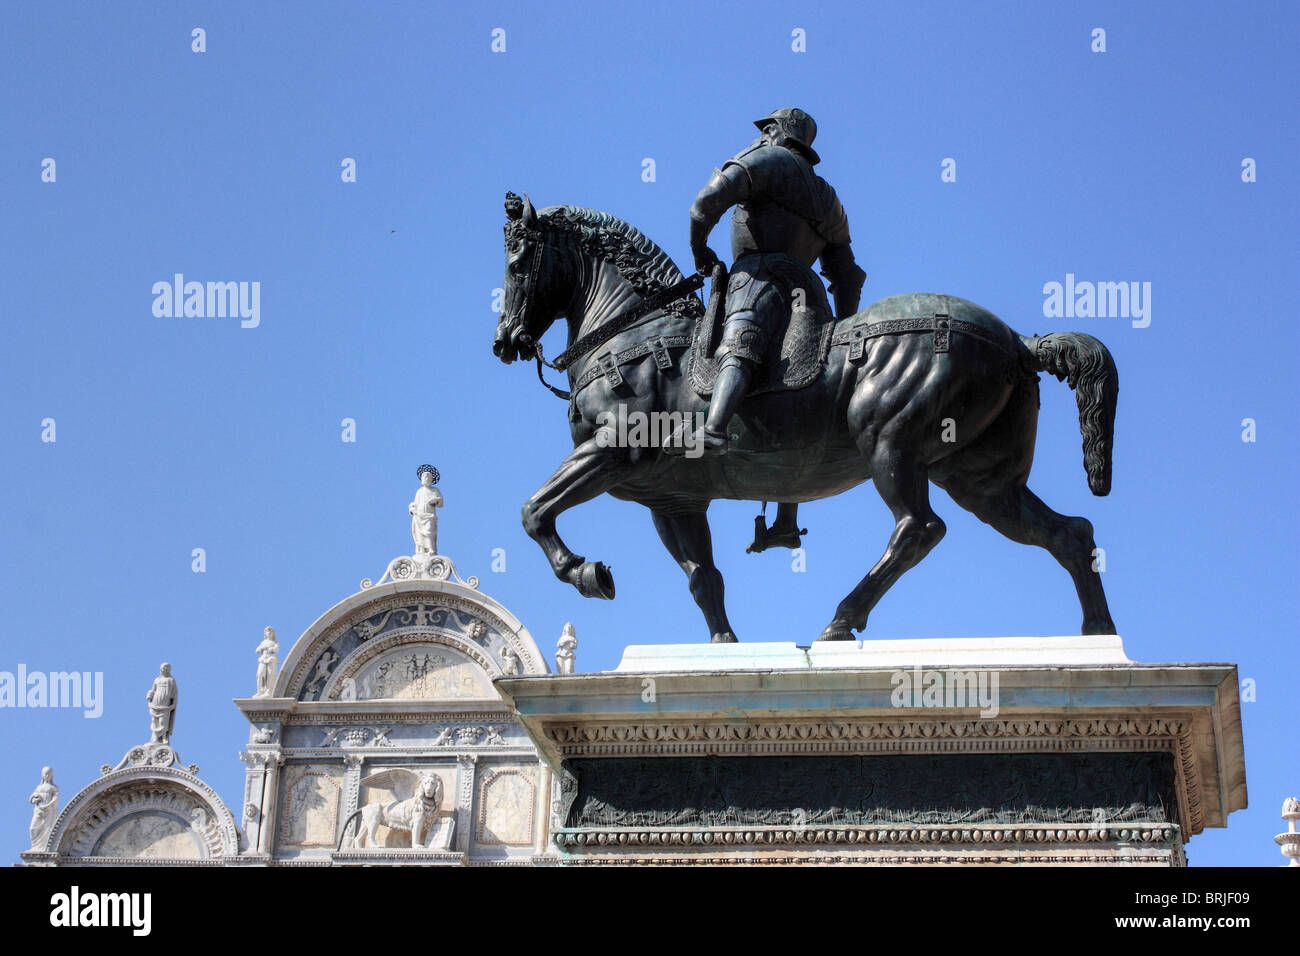 Monument équestre de Bartolomeo Colleoni, Venise, Italie Banque D'Images